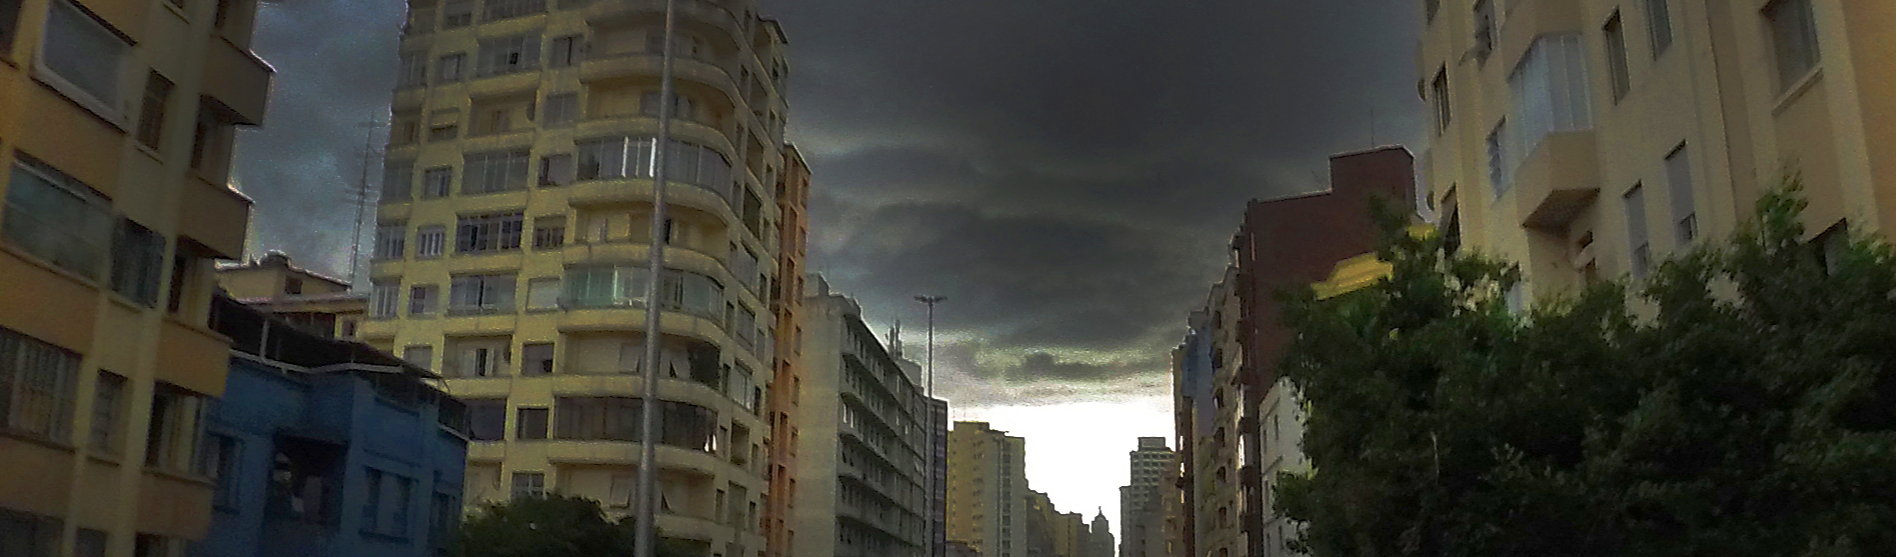 Um sonho infeliz de cidade: São Paulo simboliza mazelas da sociedade brasileira